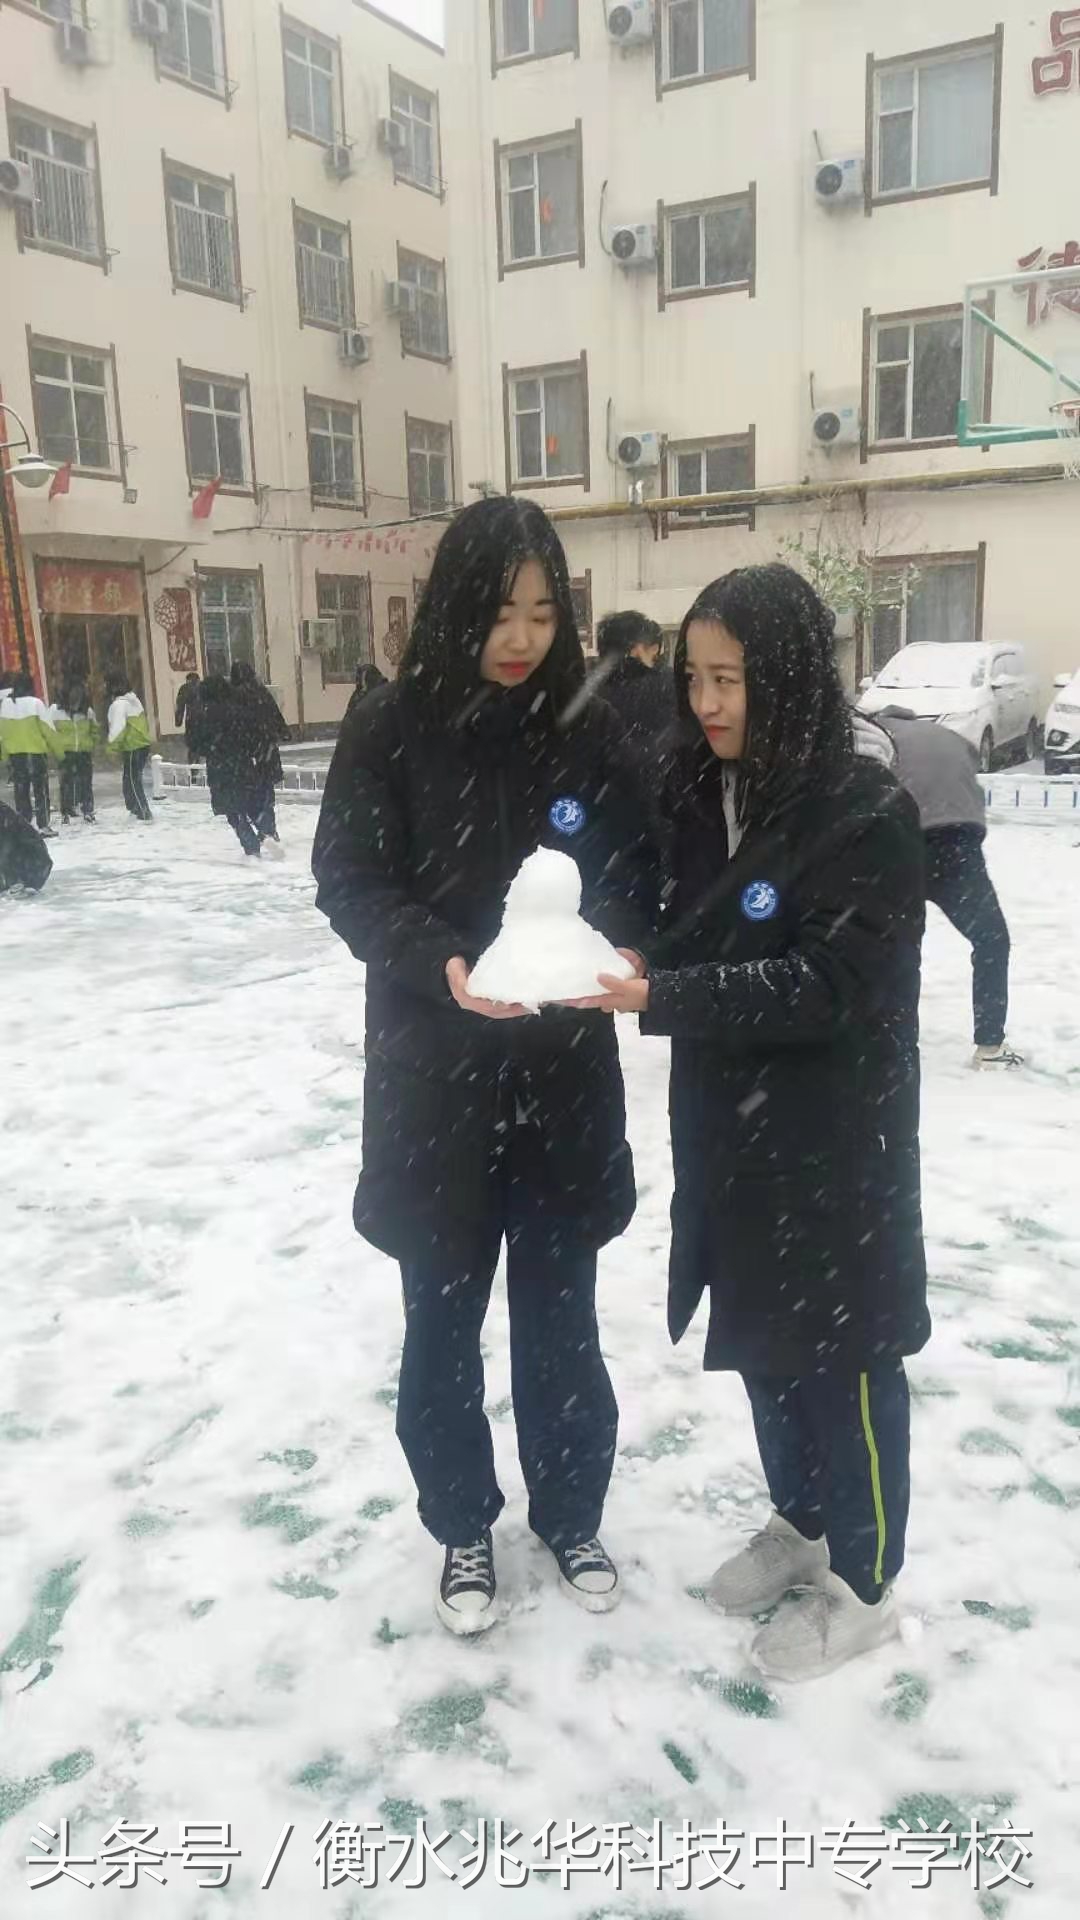 “冰雪進校園 助力冬奧會”--走進兆華學校冰雪活動周